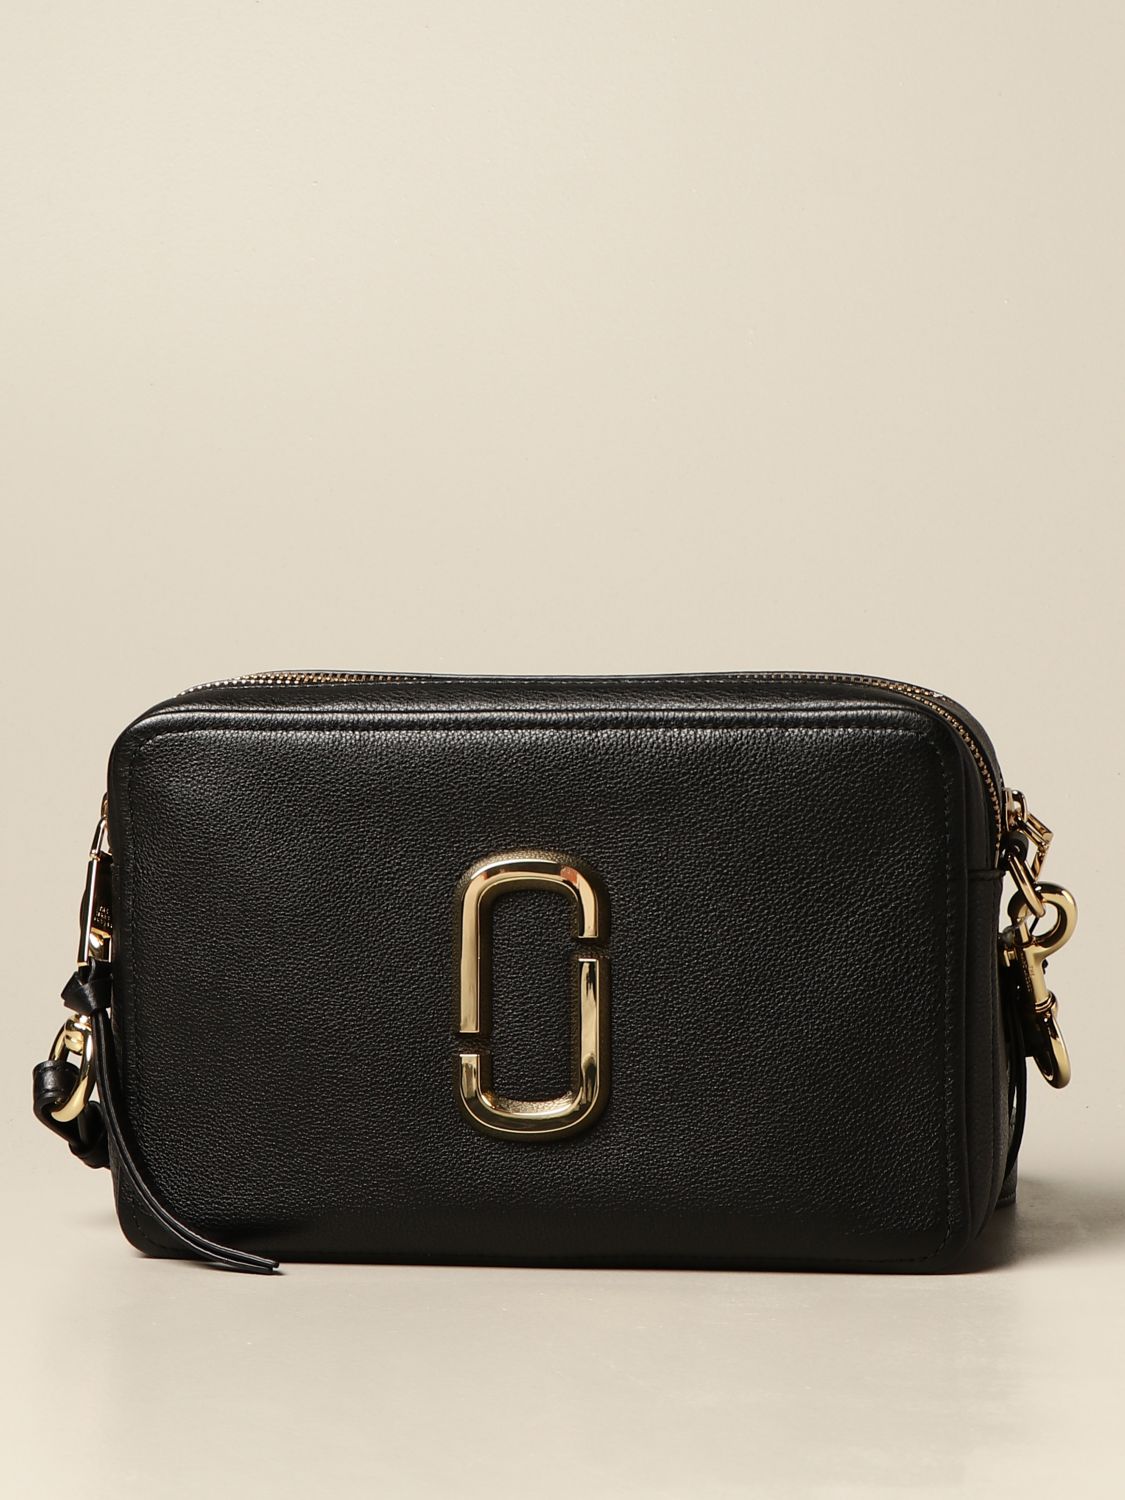 Snapshot Shoulder Bag - Marc Jacobs - Leather - Black Pony-style